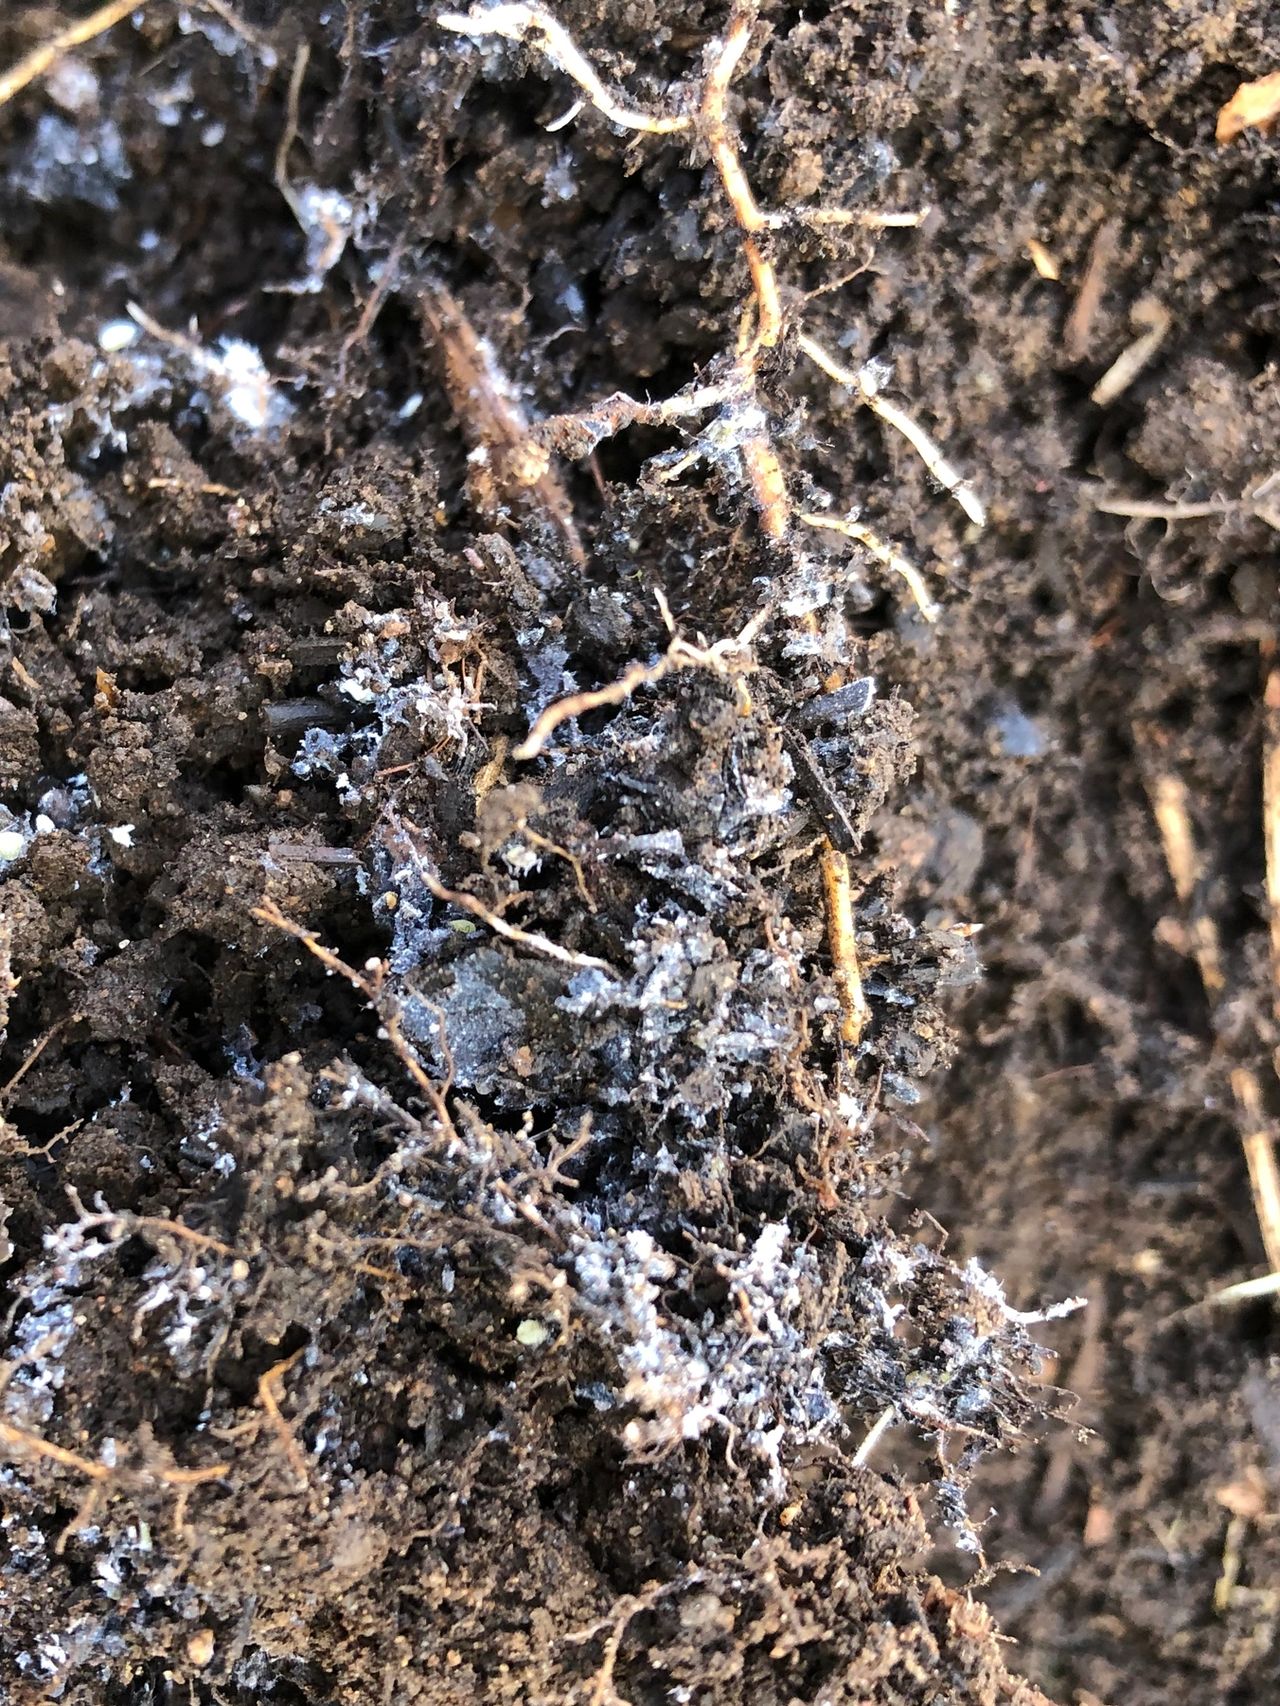 What's This White Soil!?